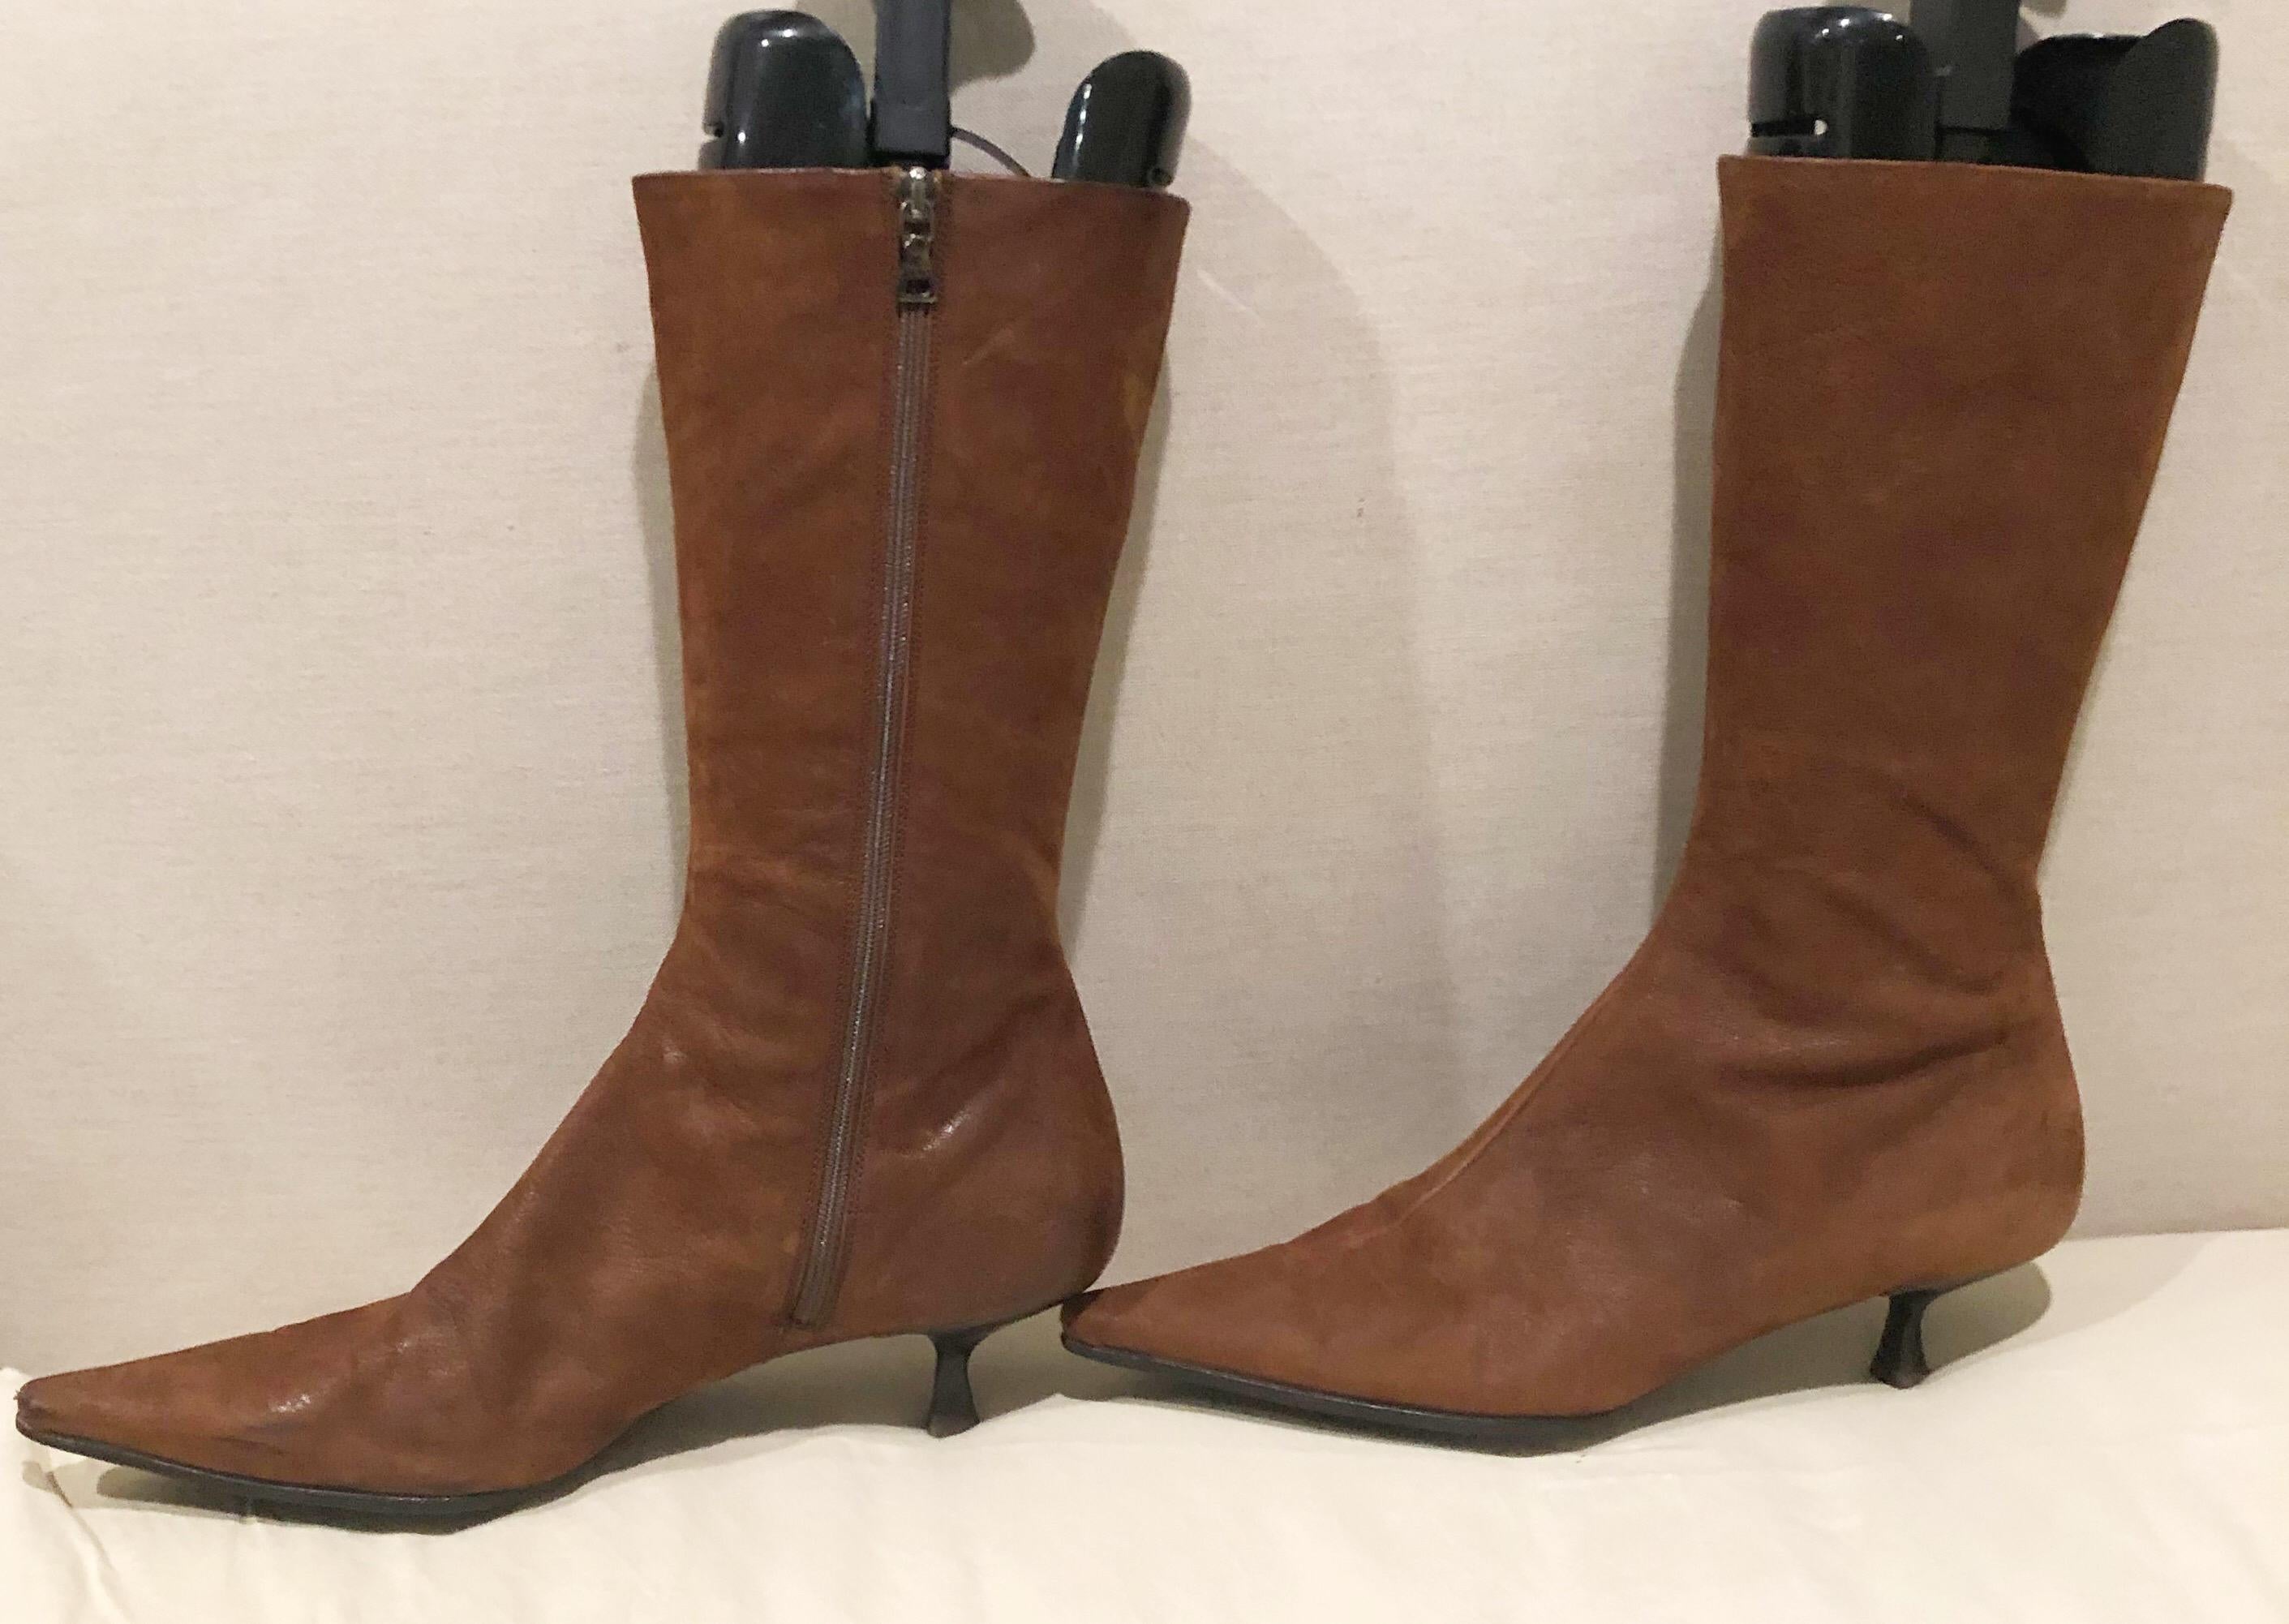 brown kitten heel boots